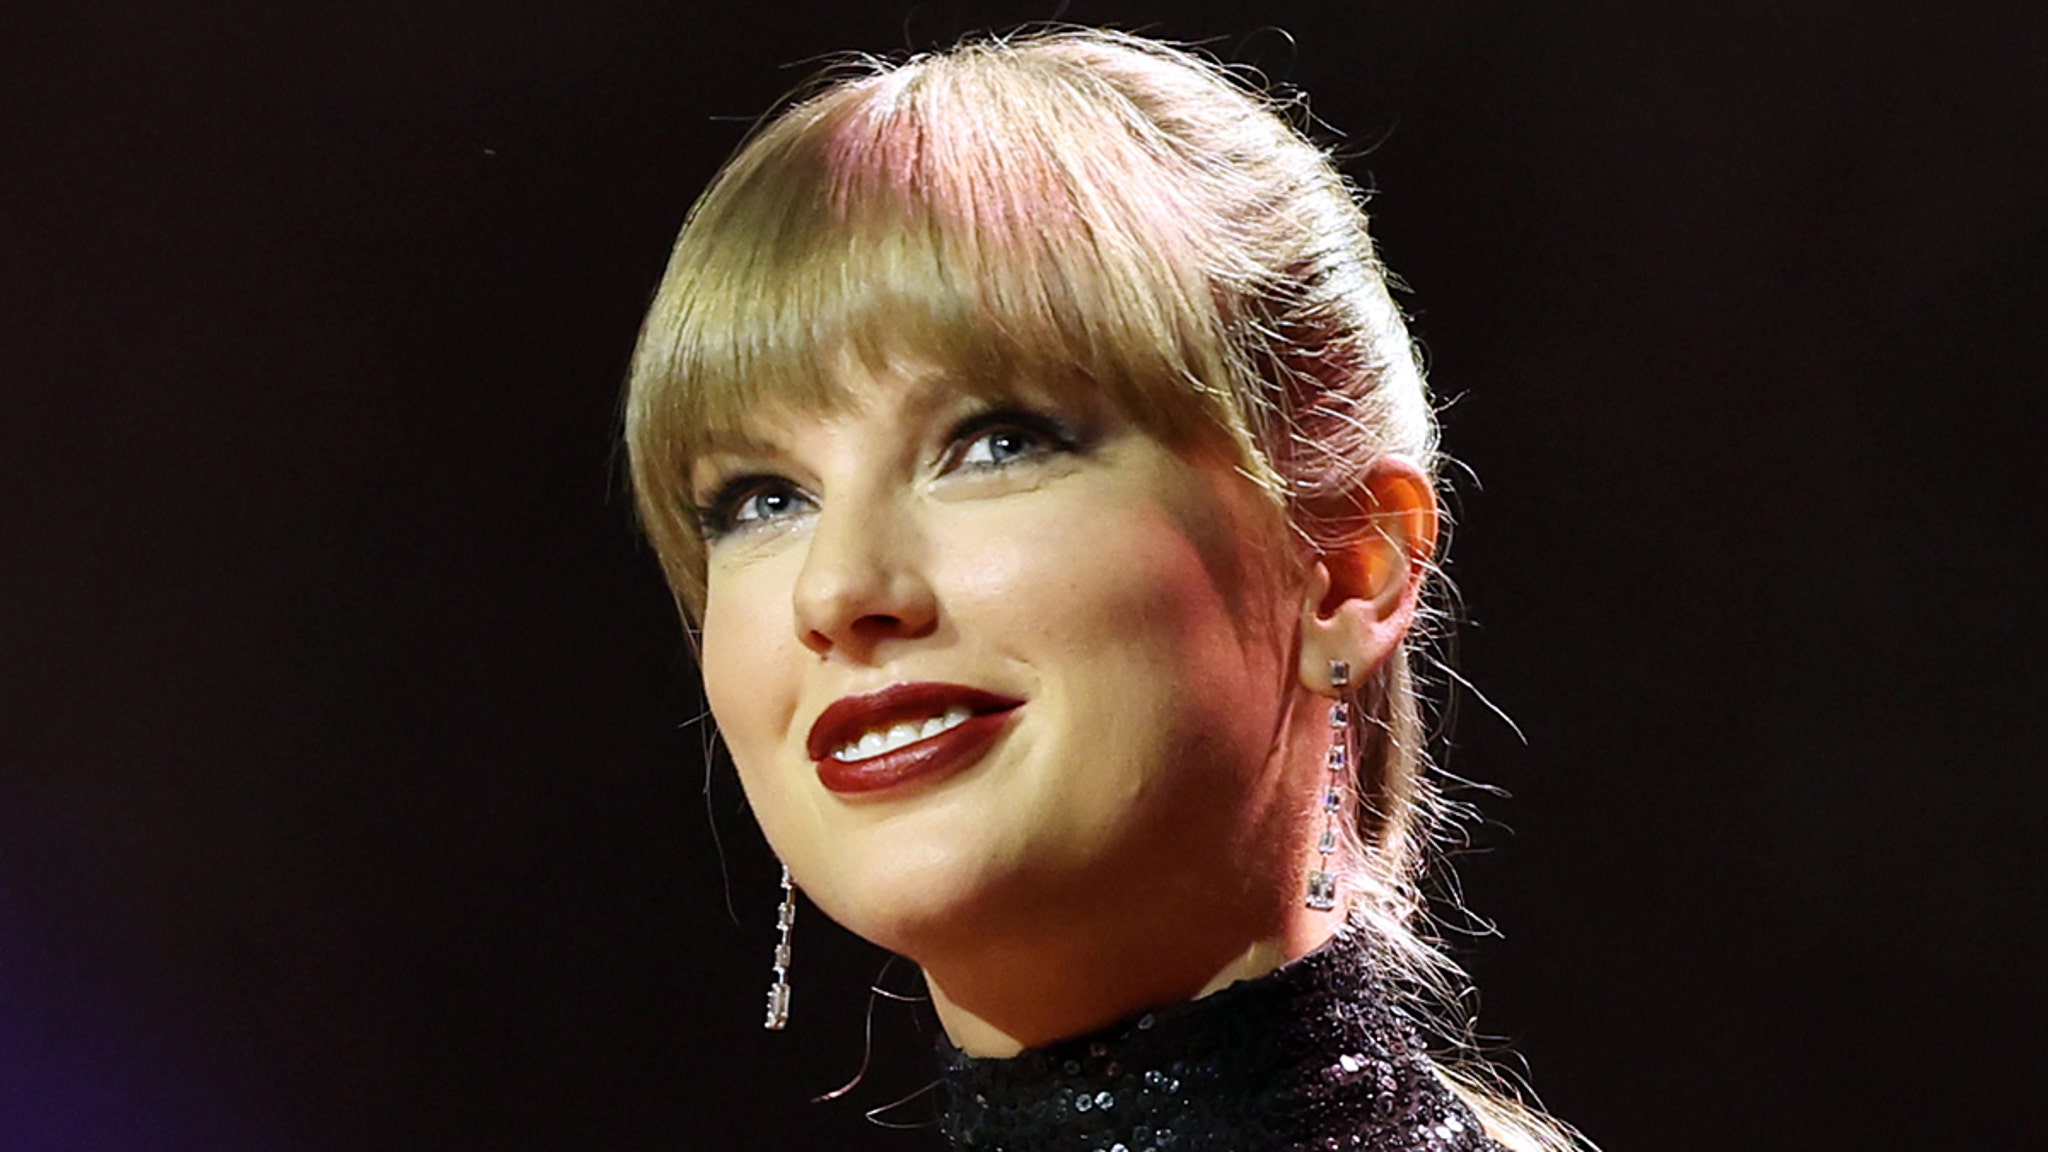 Taylor Swift lanza 4 canciones nuevas, incluida Love Song About Joe Alwyn